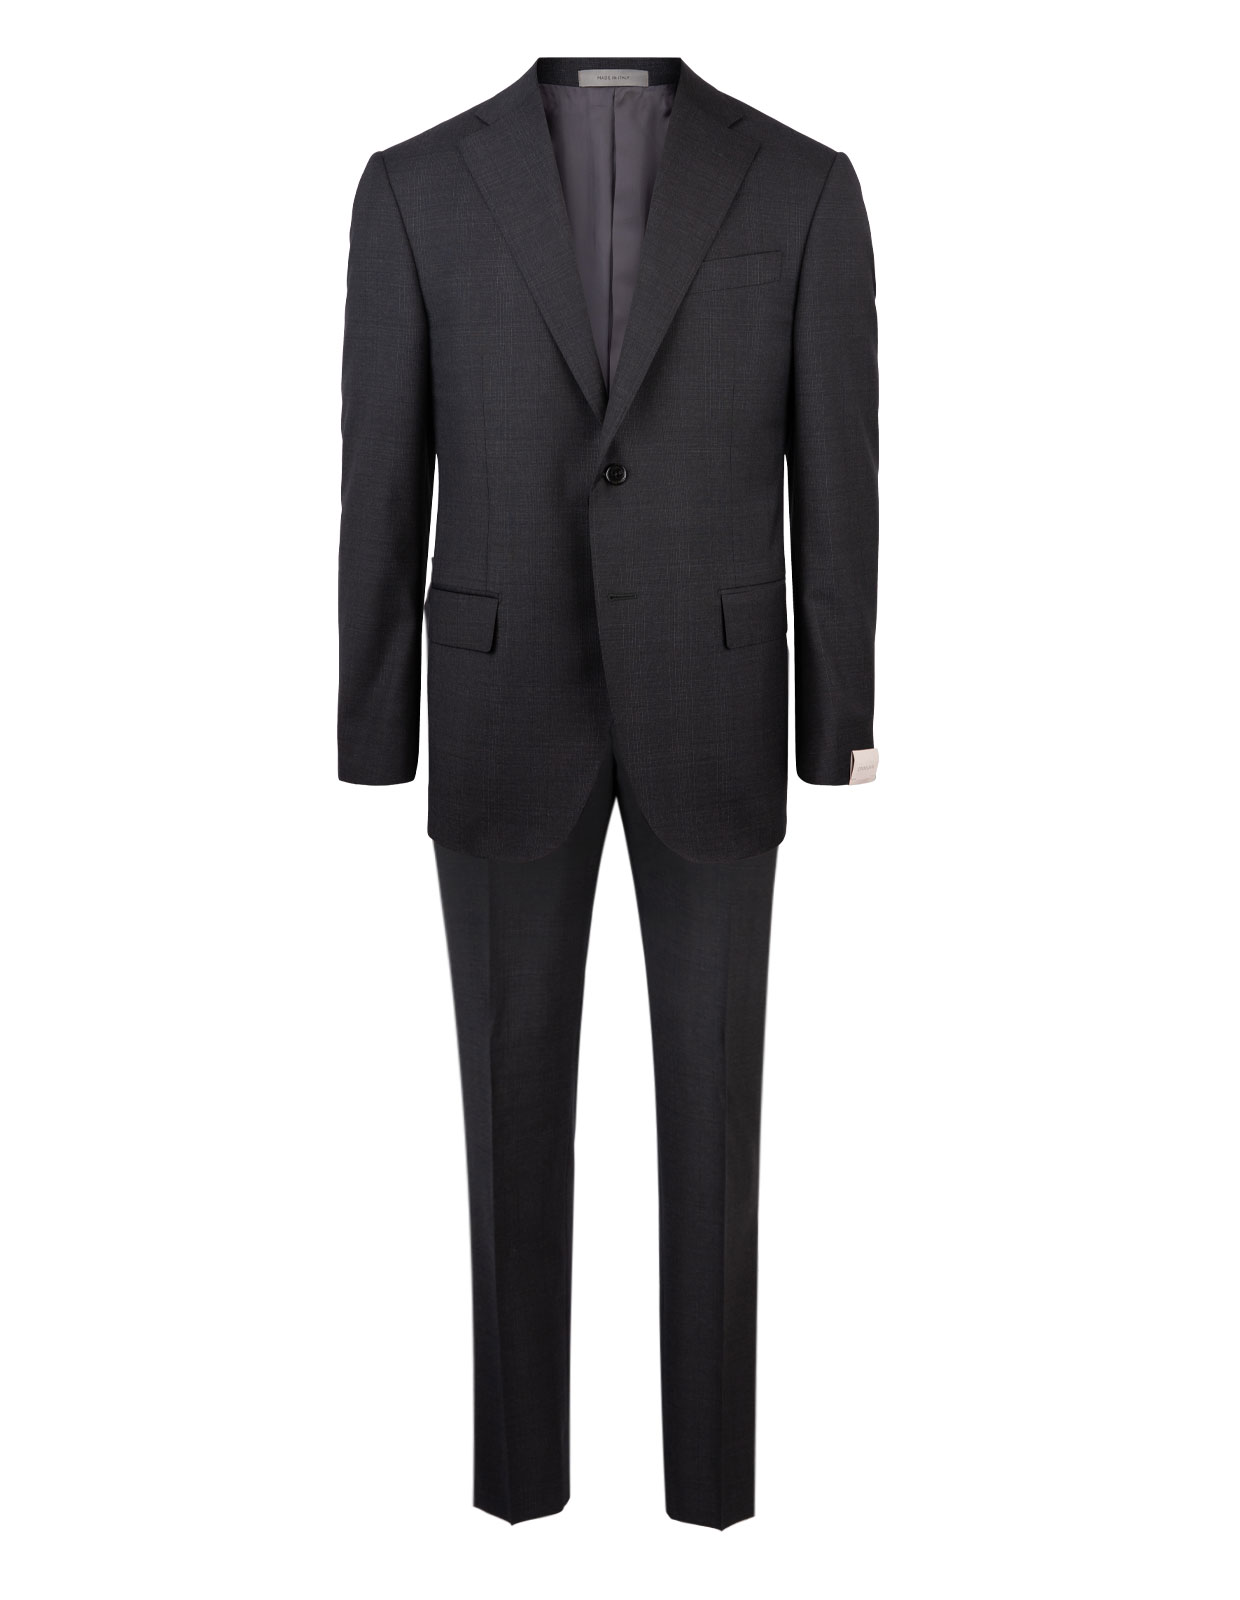 Leader Suit Wool Grey Check Stl 50